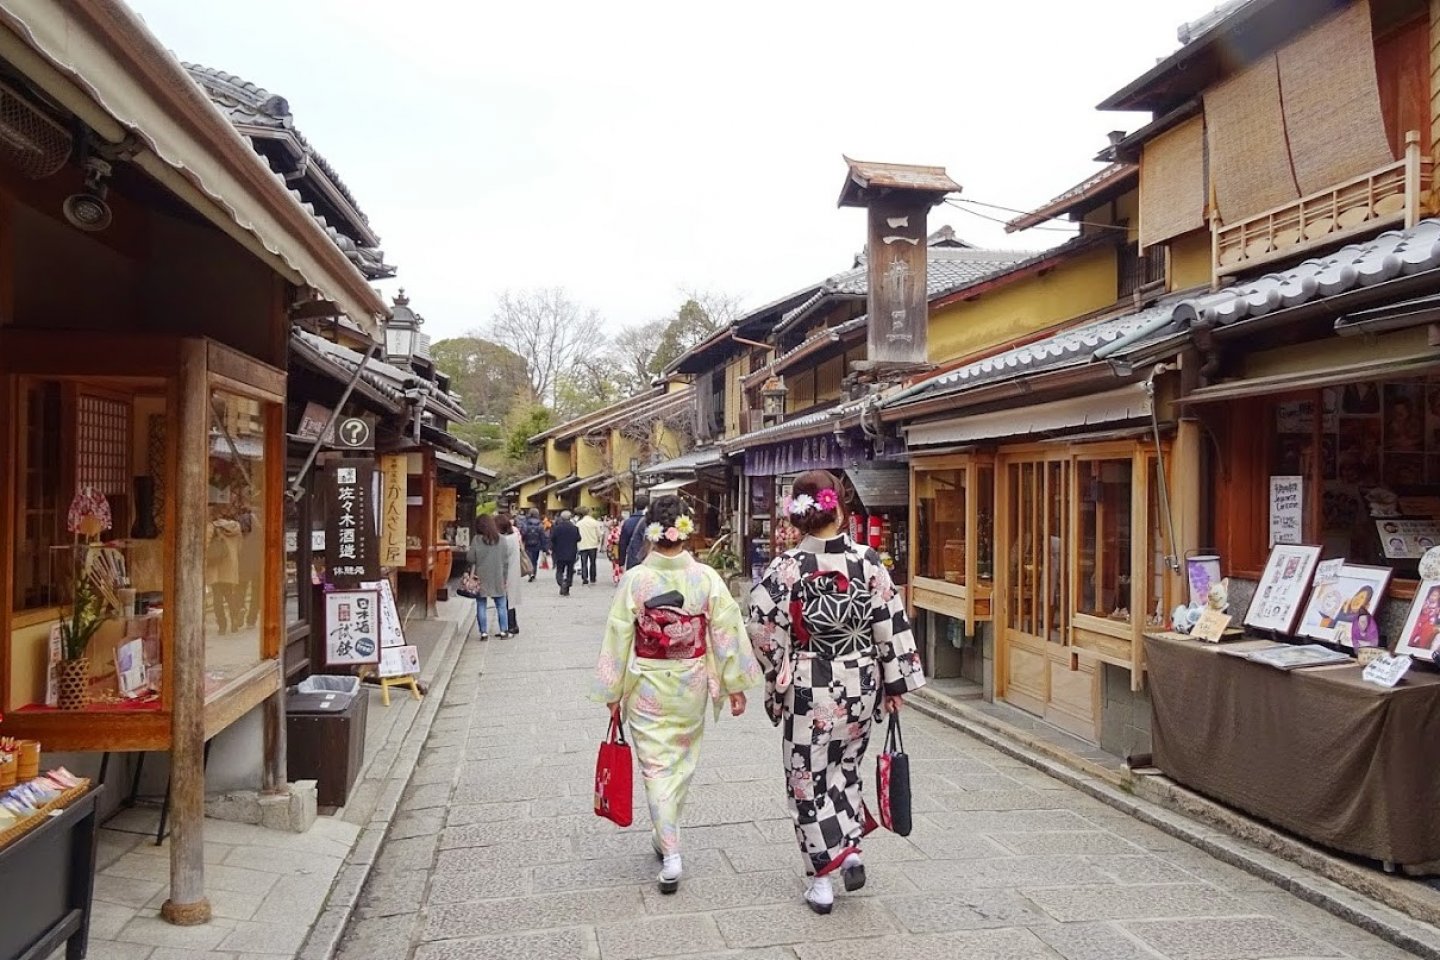 บนถนน ซานเน็นซะกะ นิเน็นซะกะ คุณจะเห็นสาวๆ แต่งตัวชุดกิโมโนเดินกันขวักไขว่